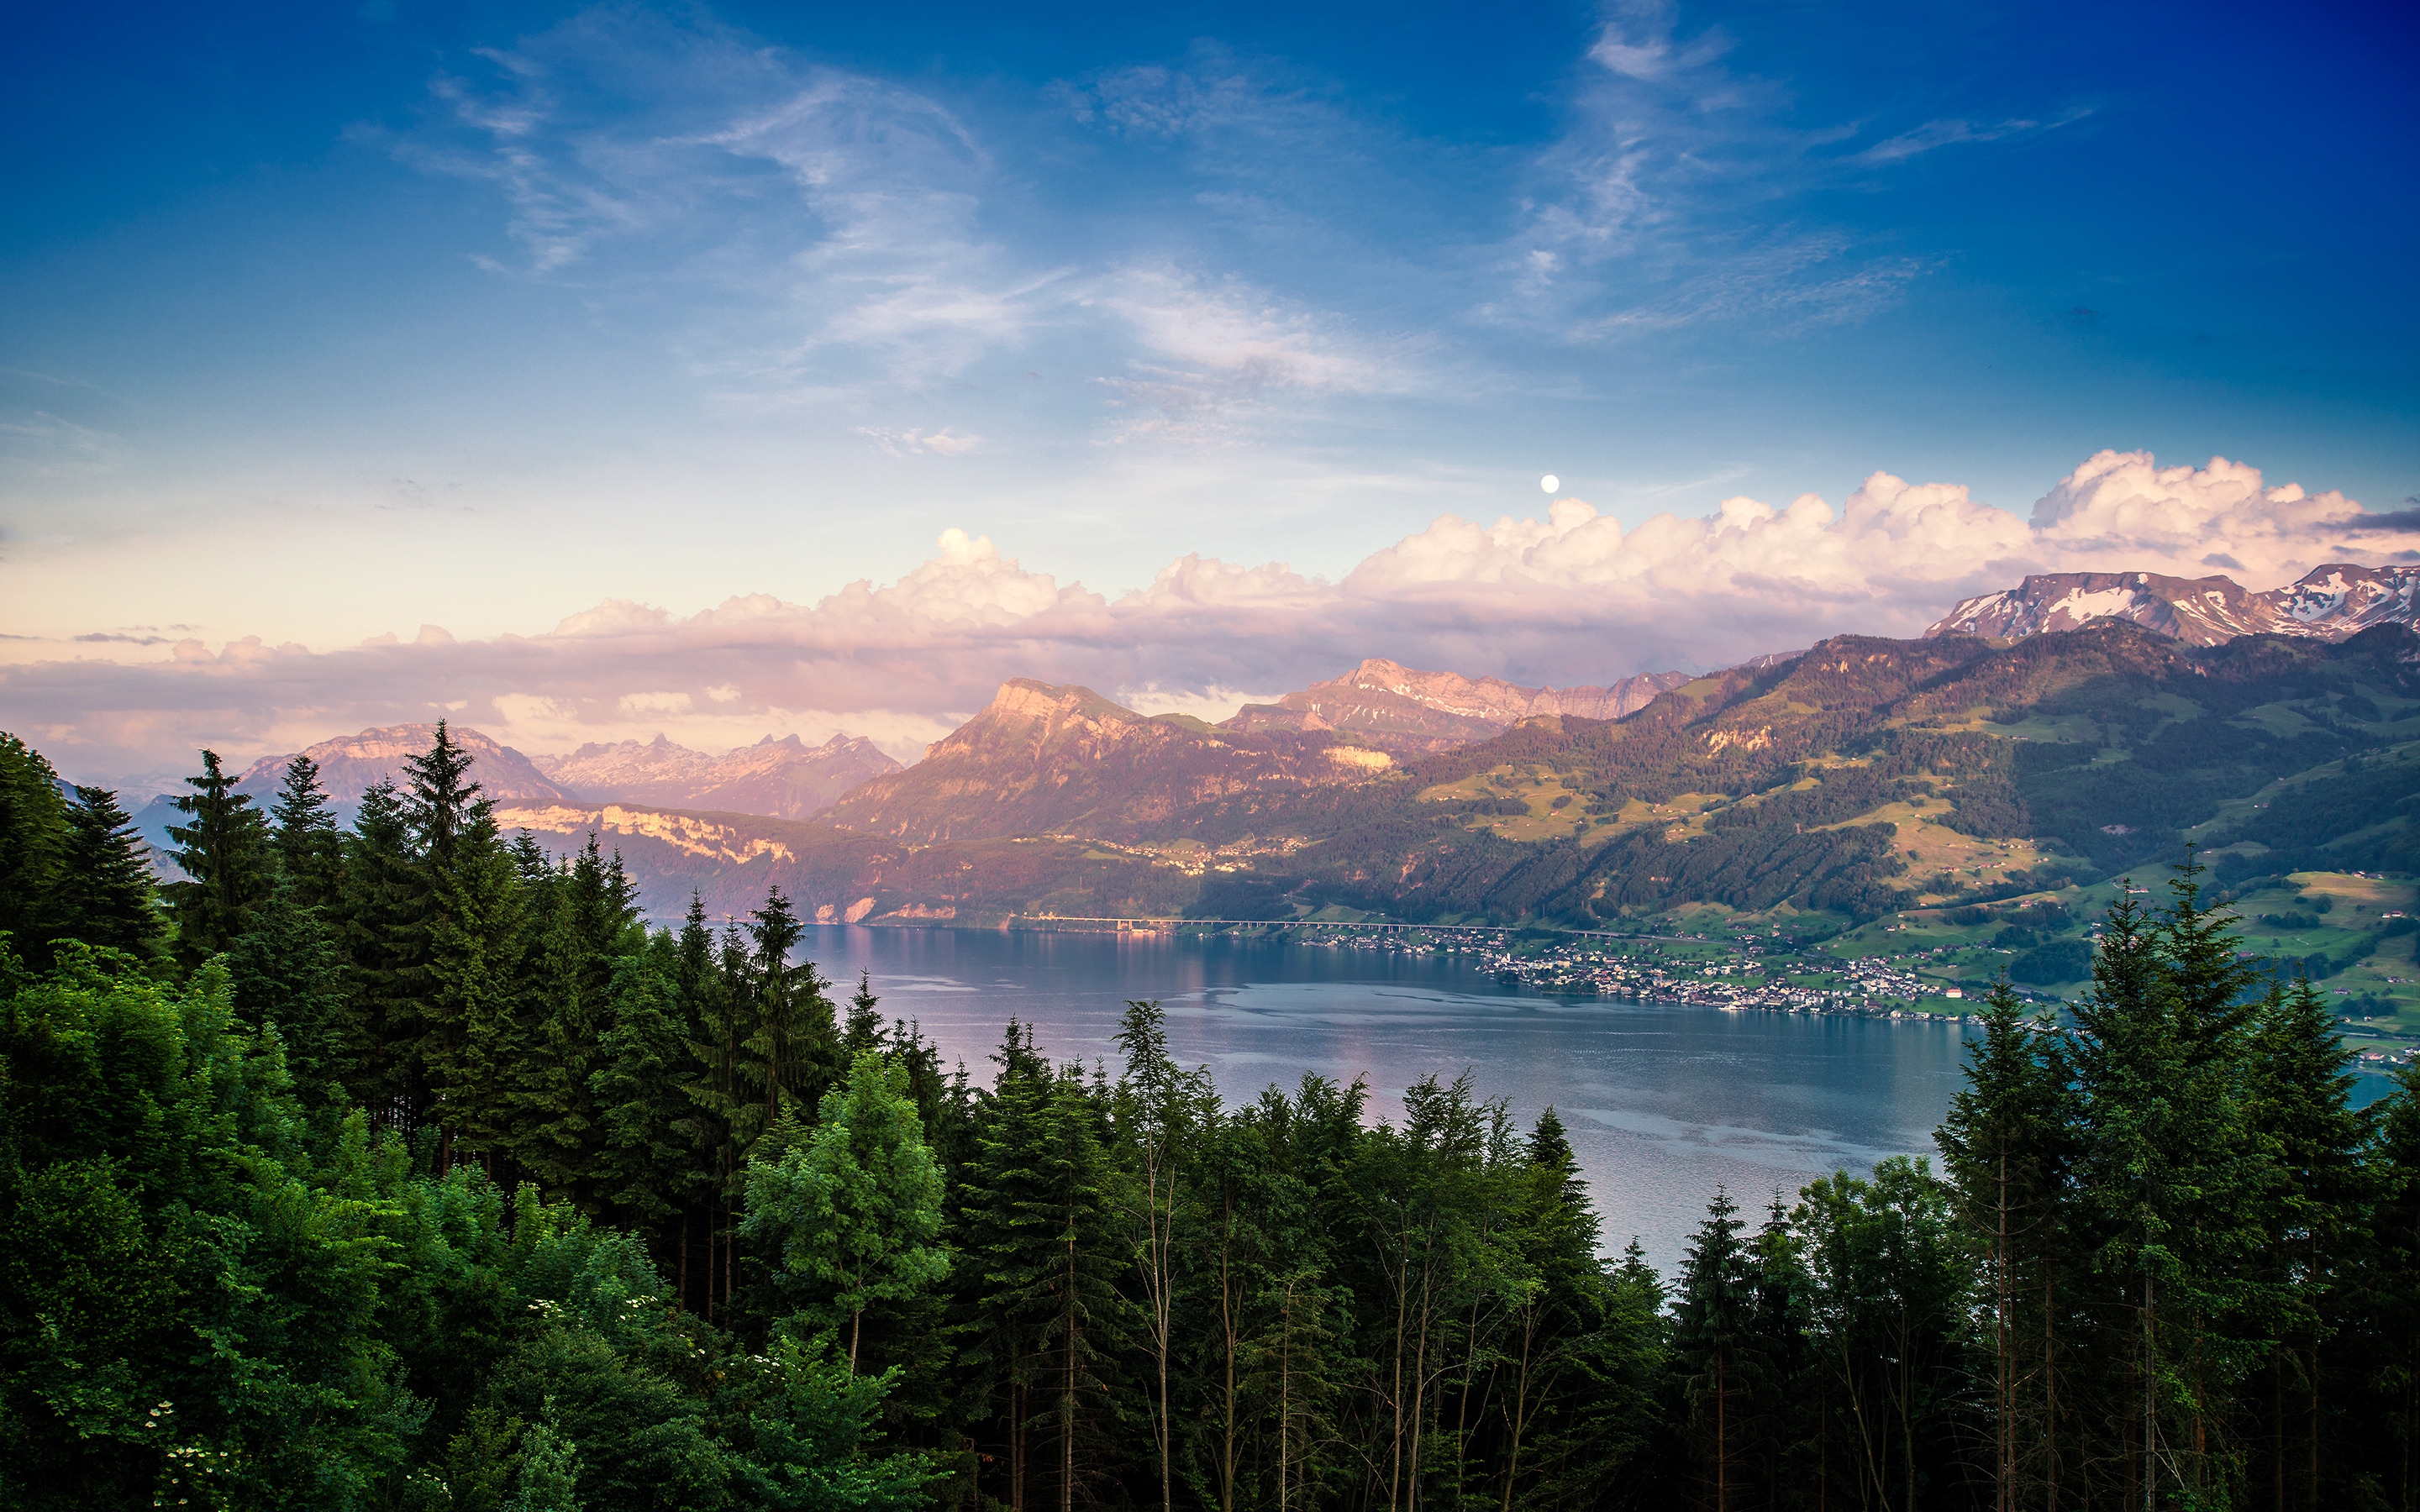 Lake Zurich Landscape for 2880 x 1800 Retina Display resolution